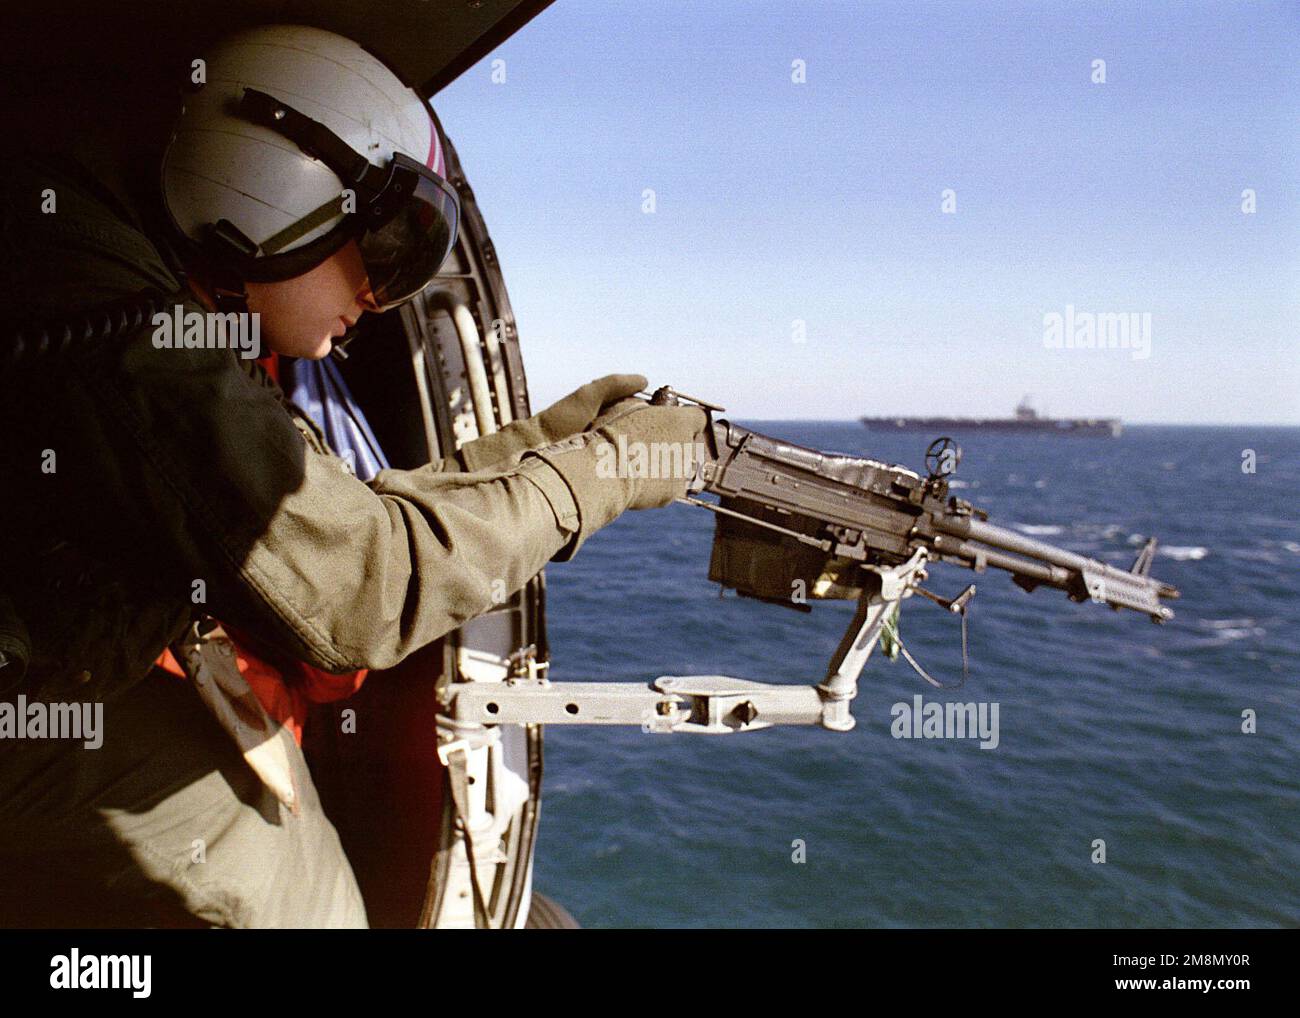 Aviation Anti-Submarine Warfare Operator 1. Class James Stephens mans ein Maschinengewehr Kaliber 50 während einer Trainingsmission an Bord eines SH-60 Sea Hawk Anti-U-Boot Hubschraubers, gestartet vom Flugzeugträger USS NIMITZ (CVN 68). Nimitz ist im Persischen Golf tätig, um die Operation Southern Watch zu unterstützen. Betreff Betrieb/Serie: SÜDLICHE WACHSTATION: USS Nimitz (CVN 68) Stockfoto